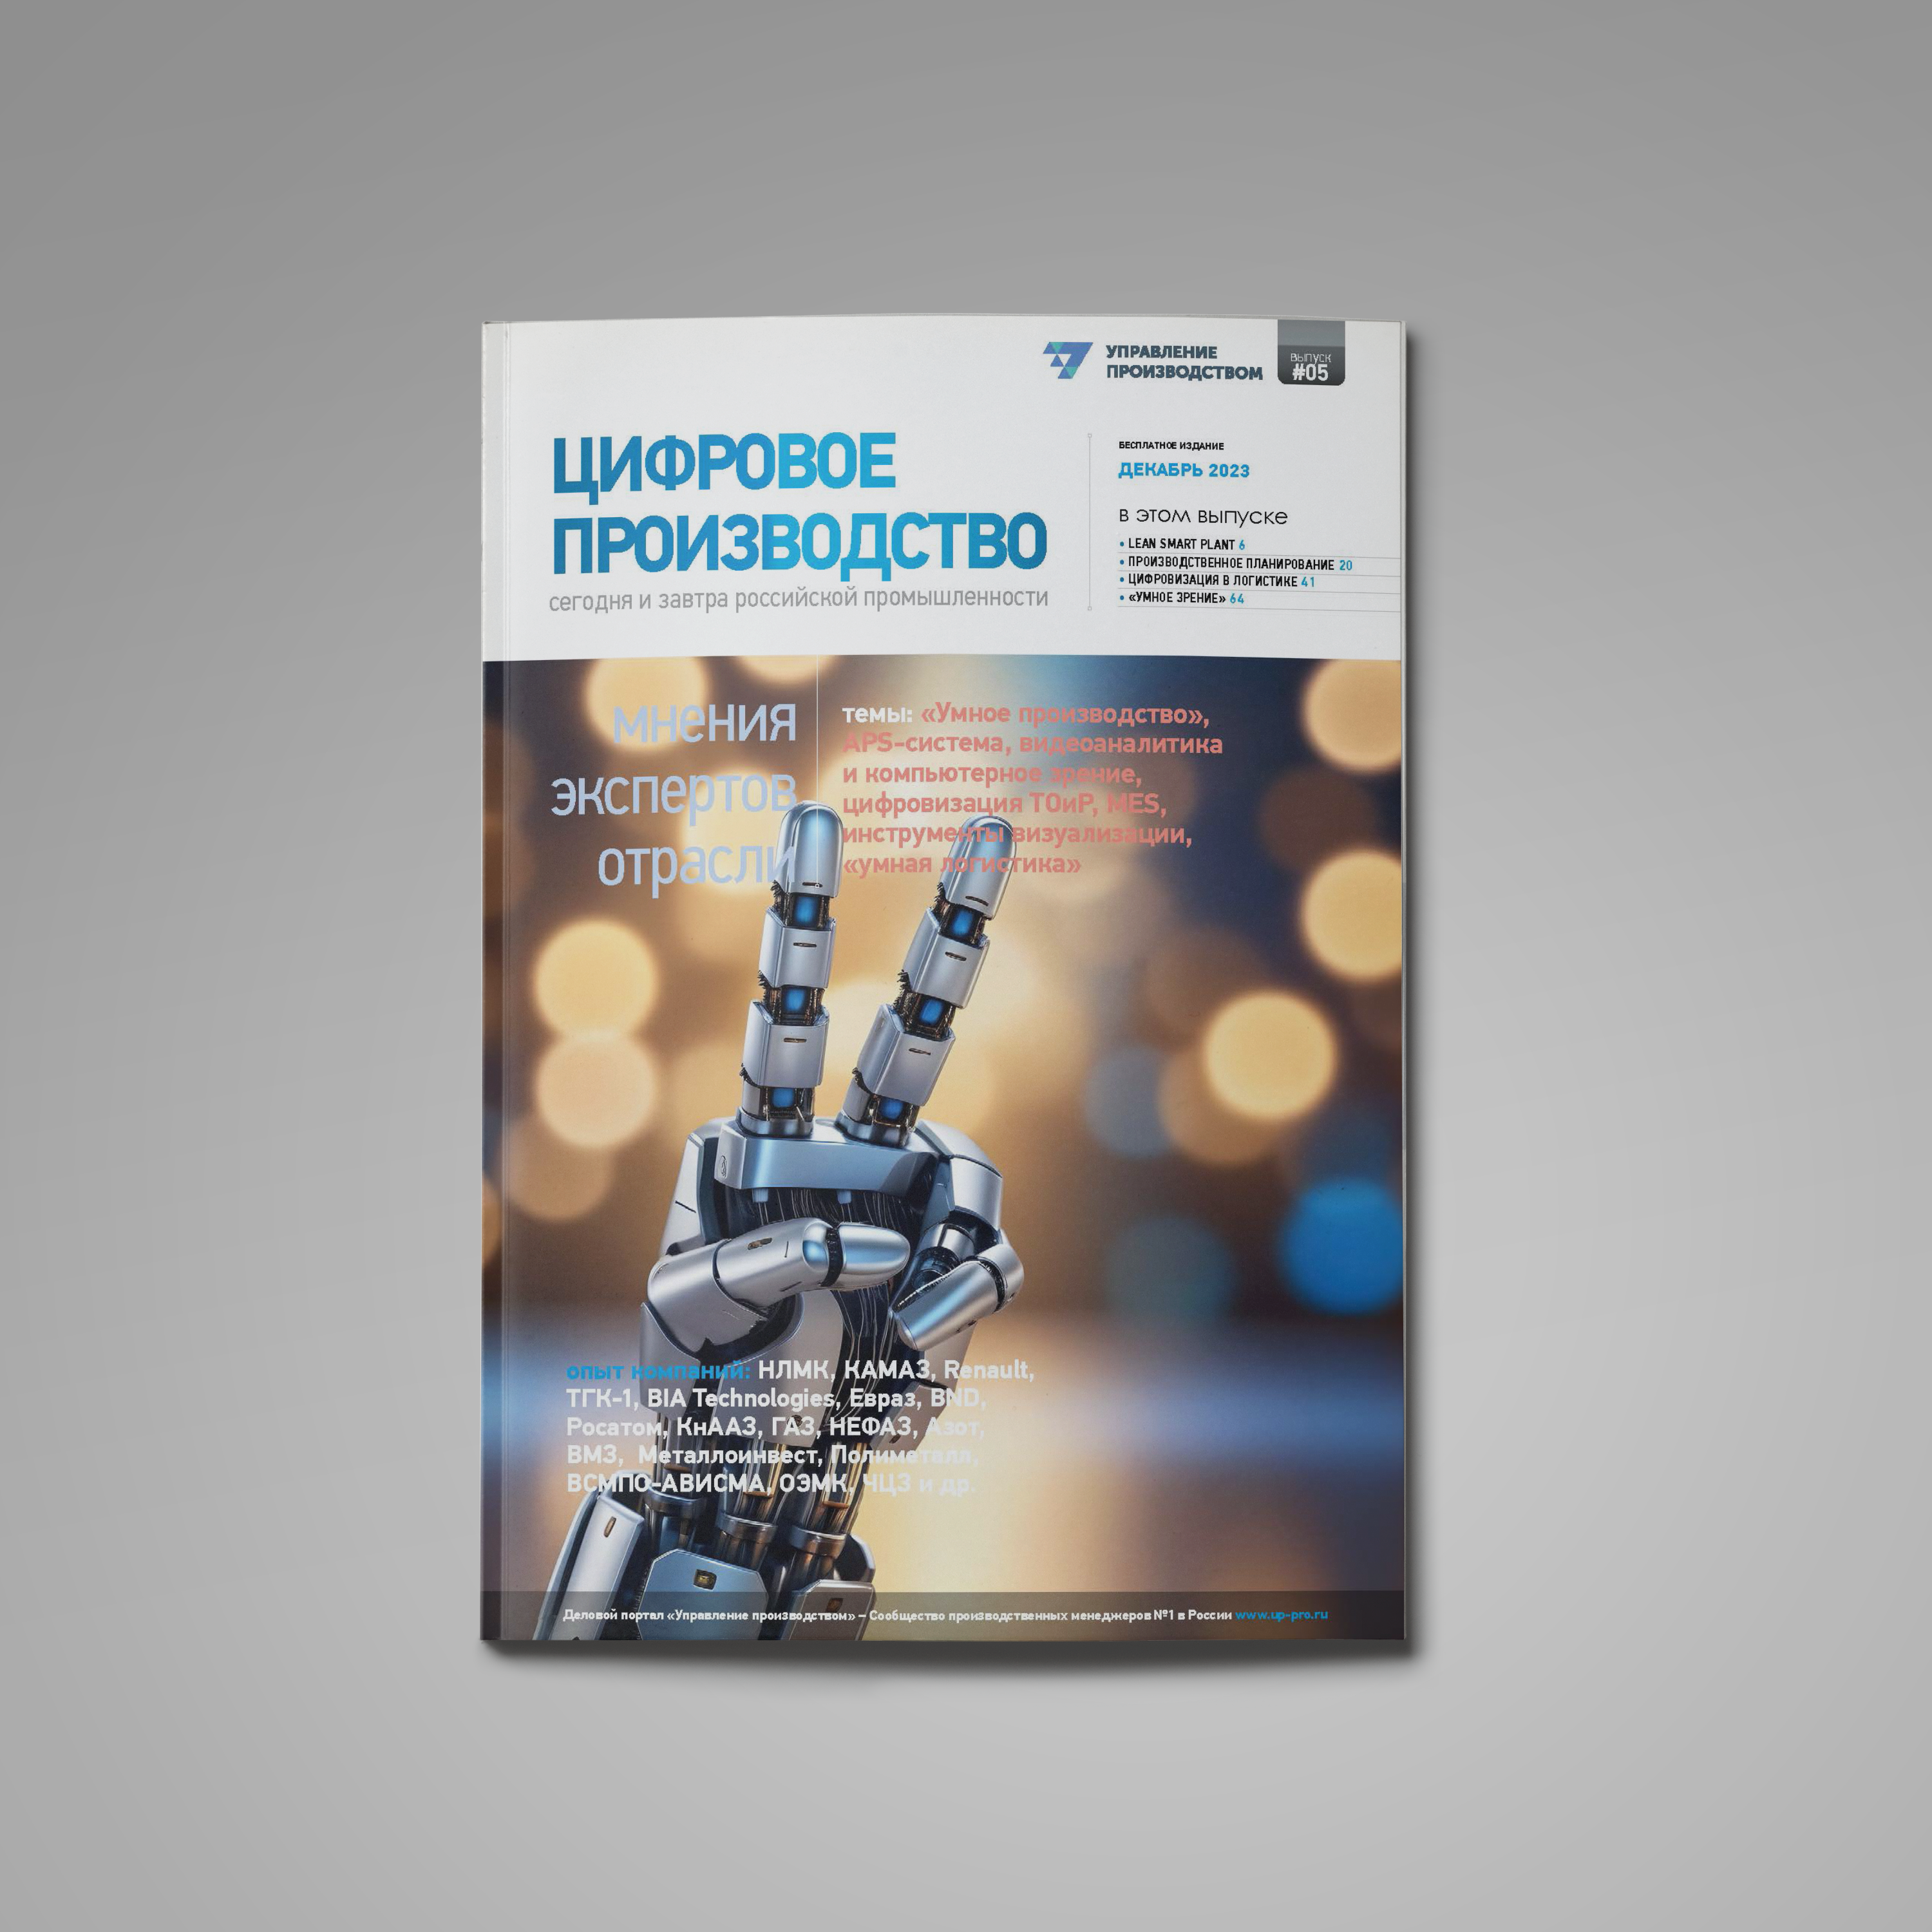 Пятый выпуск «Цифровое производство: сегодня и завтра российской промышленности»